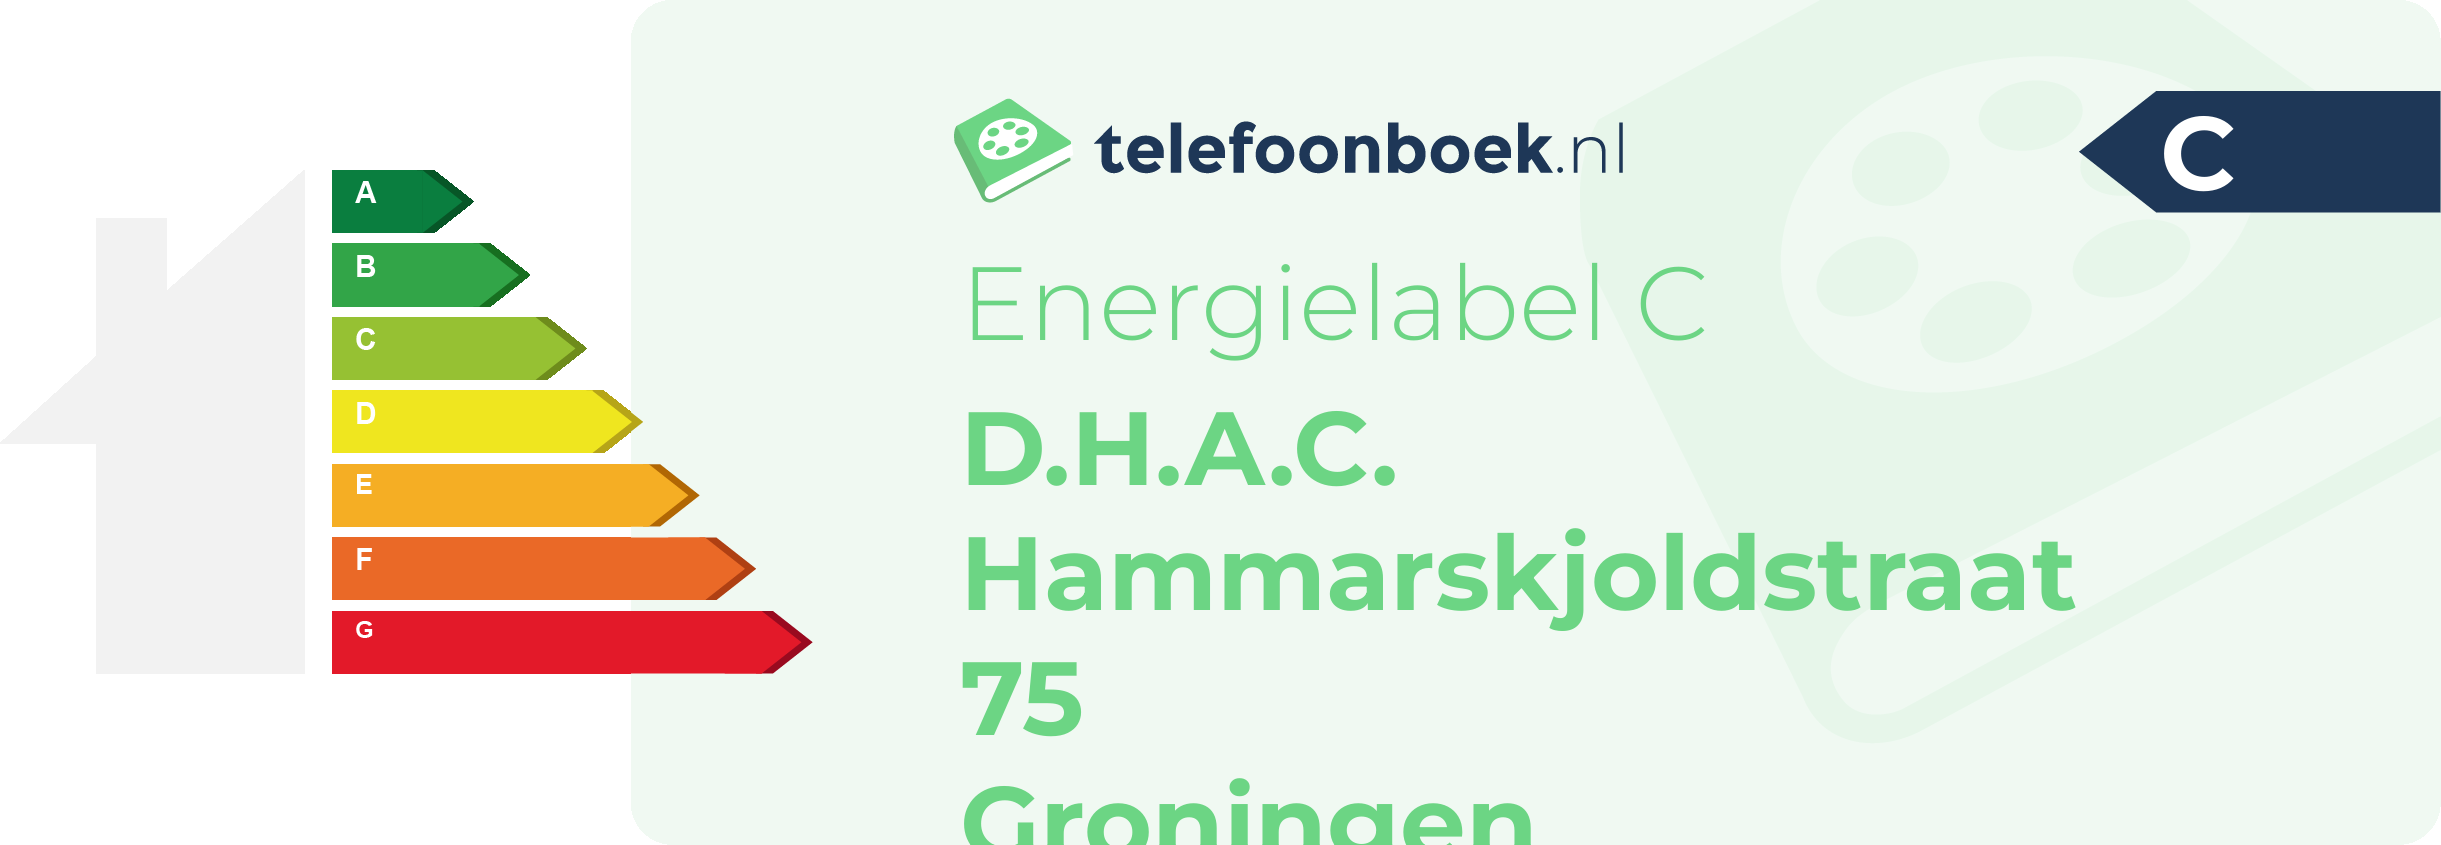 Energielabel D.H.A.C. Hammarskjoldstraat 75 Groningen